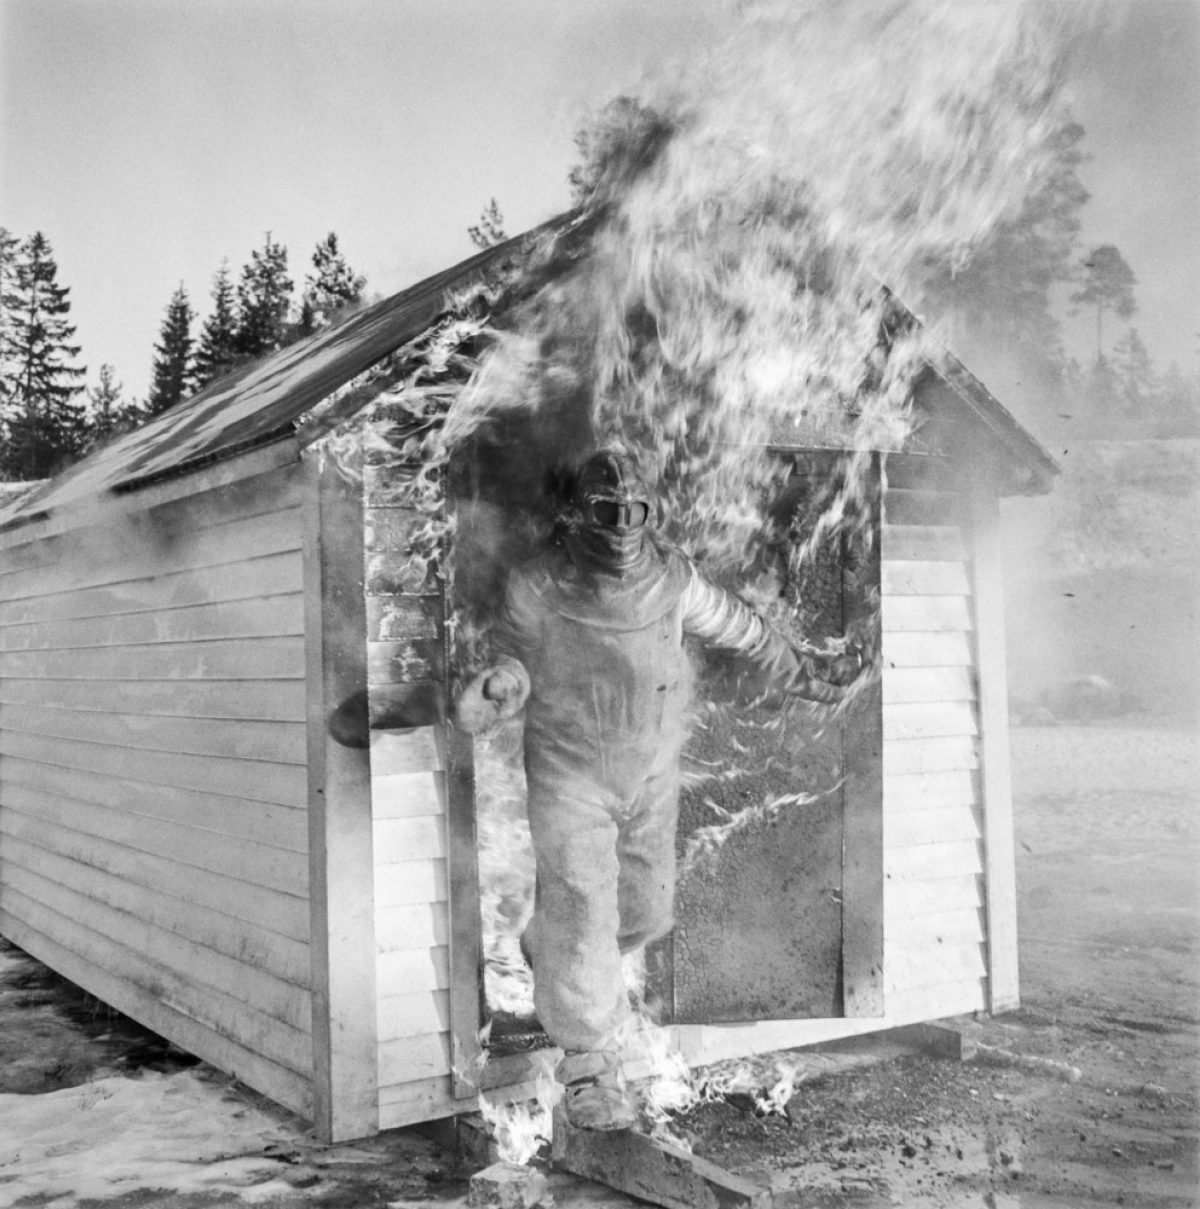 Matti Jämsä testade Suomen Mineraali Oy:s asbestdräkt år 1957. Han stannade kvar bland lågorna så länge att medhjälparna fruktade det värsta. Foto: UA Saarinen / Journalistiska bildarkivet JOKA / Museiverket